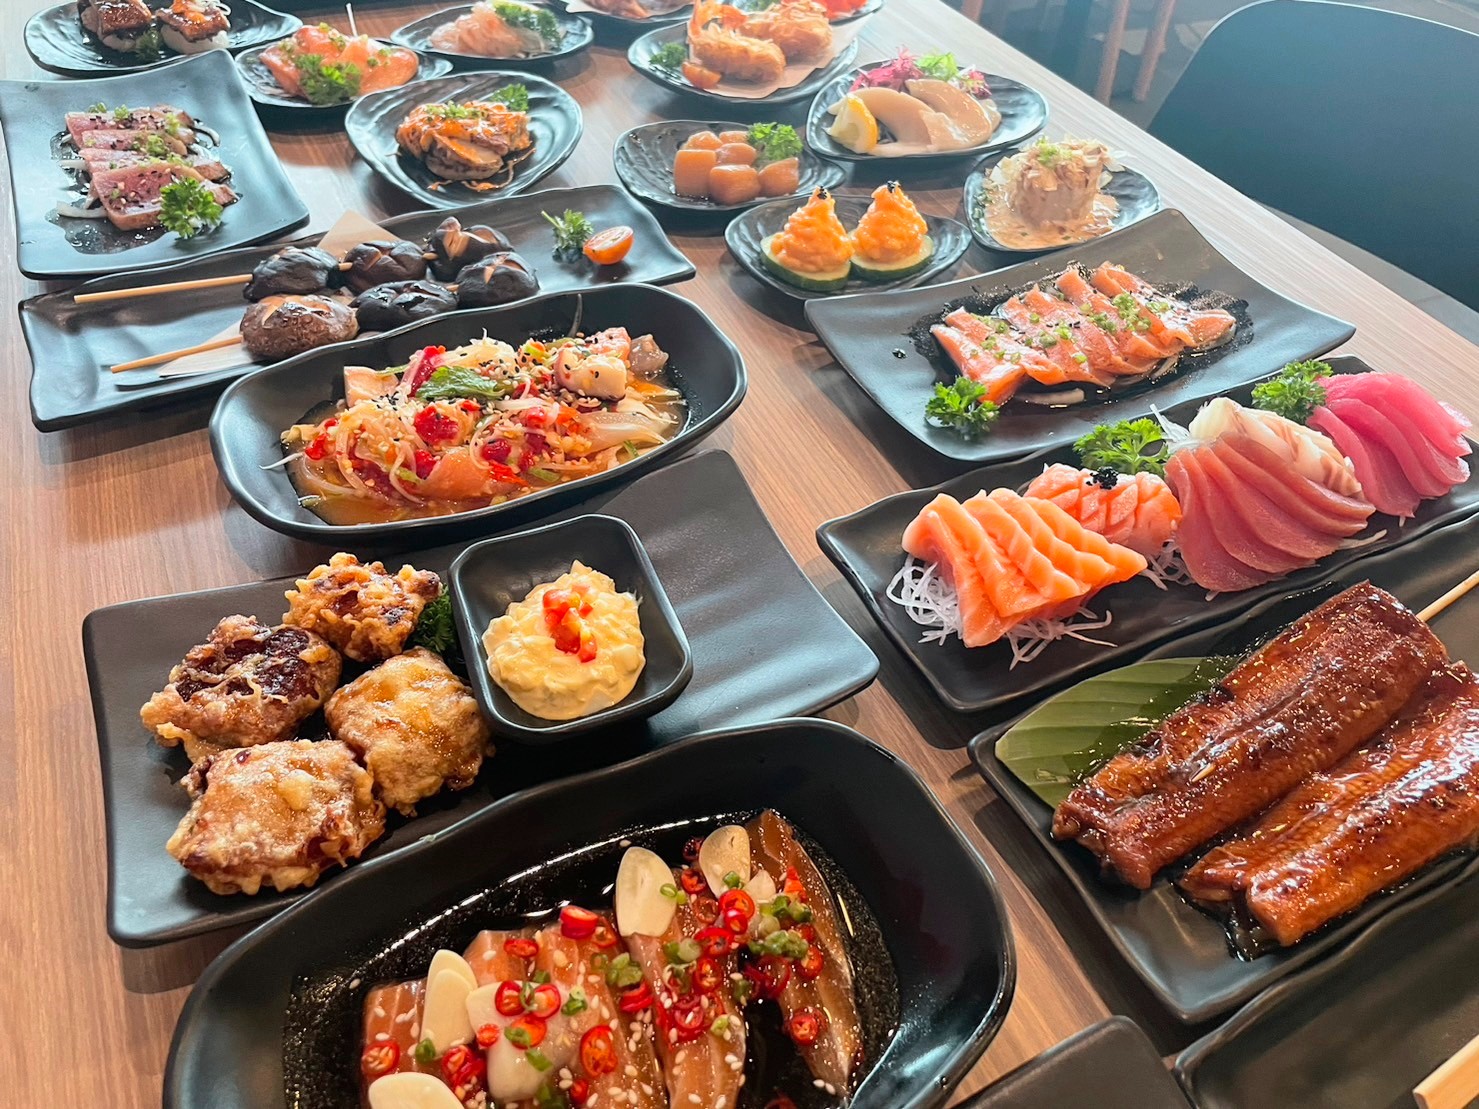 ไปลองมาแล้ว>> Tsunami sushi buffet บุฟเฟ่ต์อาหารญี่ปุ่นที่เมนูหลากหลายมากกกก - Pantip